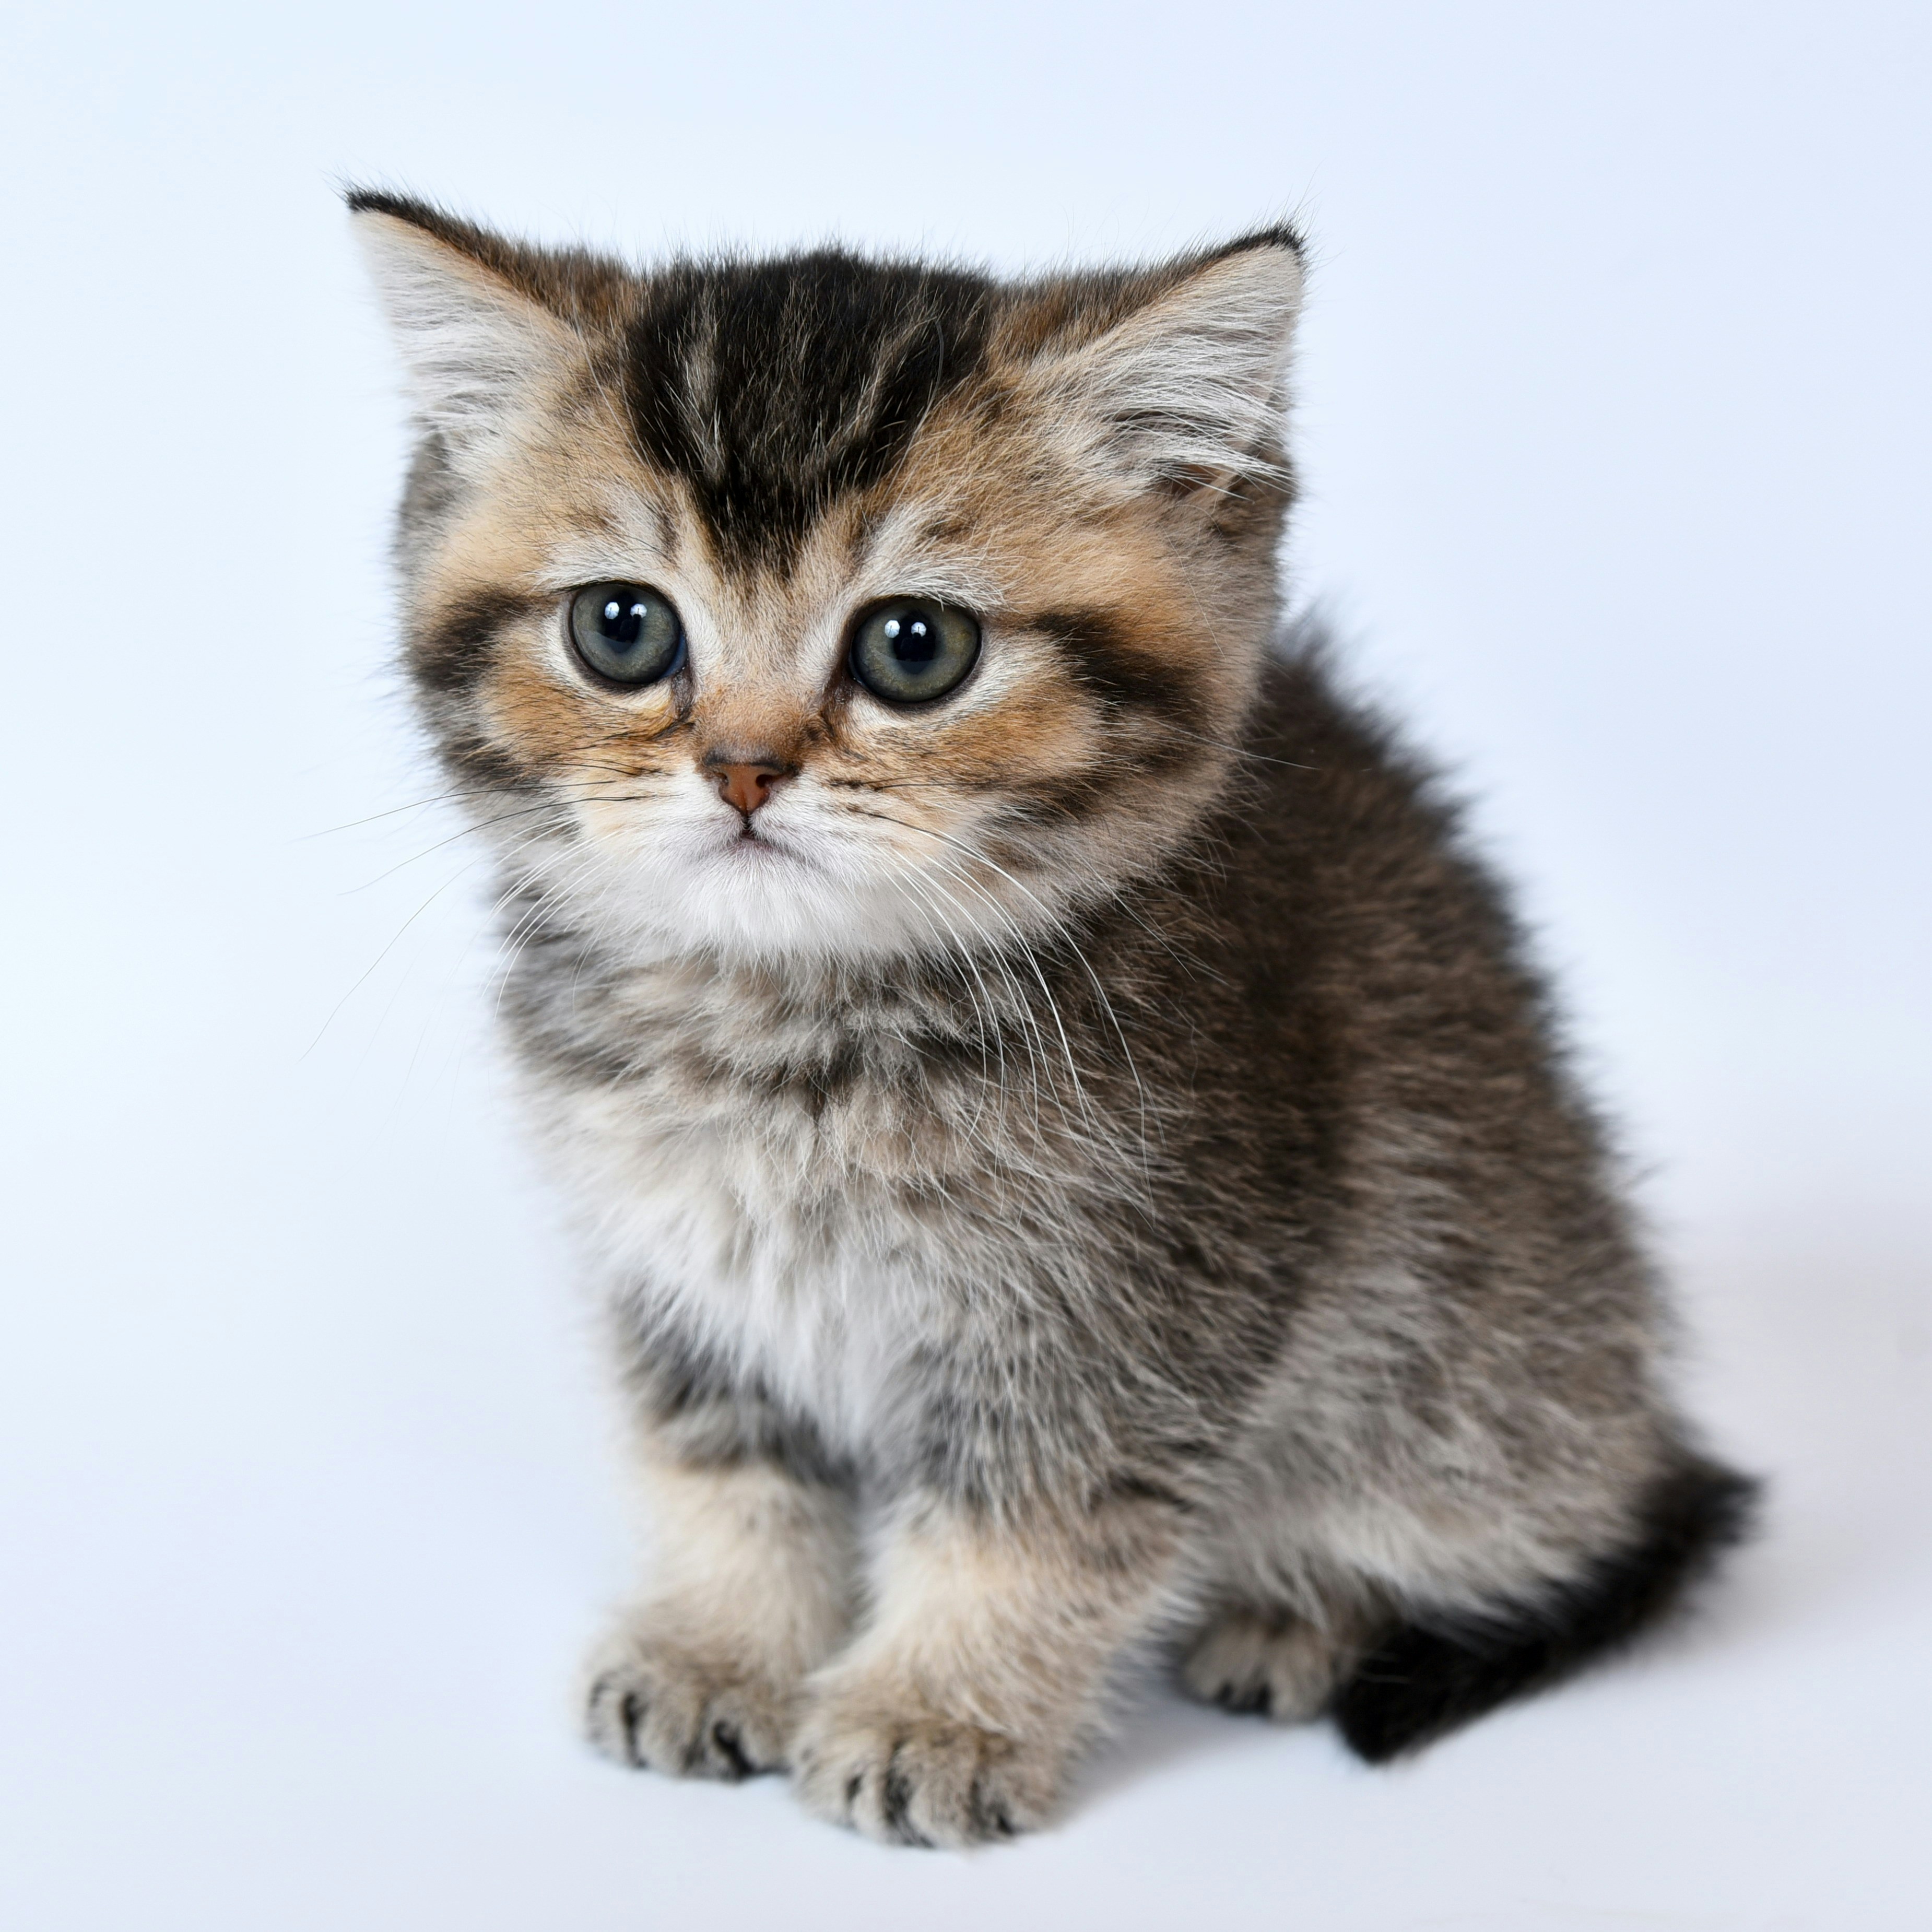 100+ immagini di gattini | Scarica immagini gratis su Unsplash